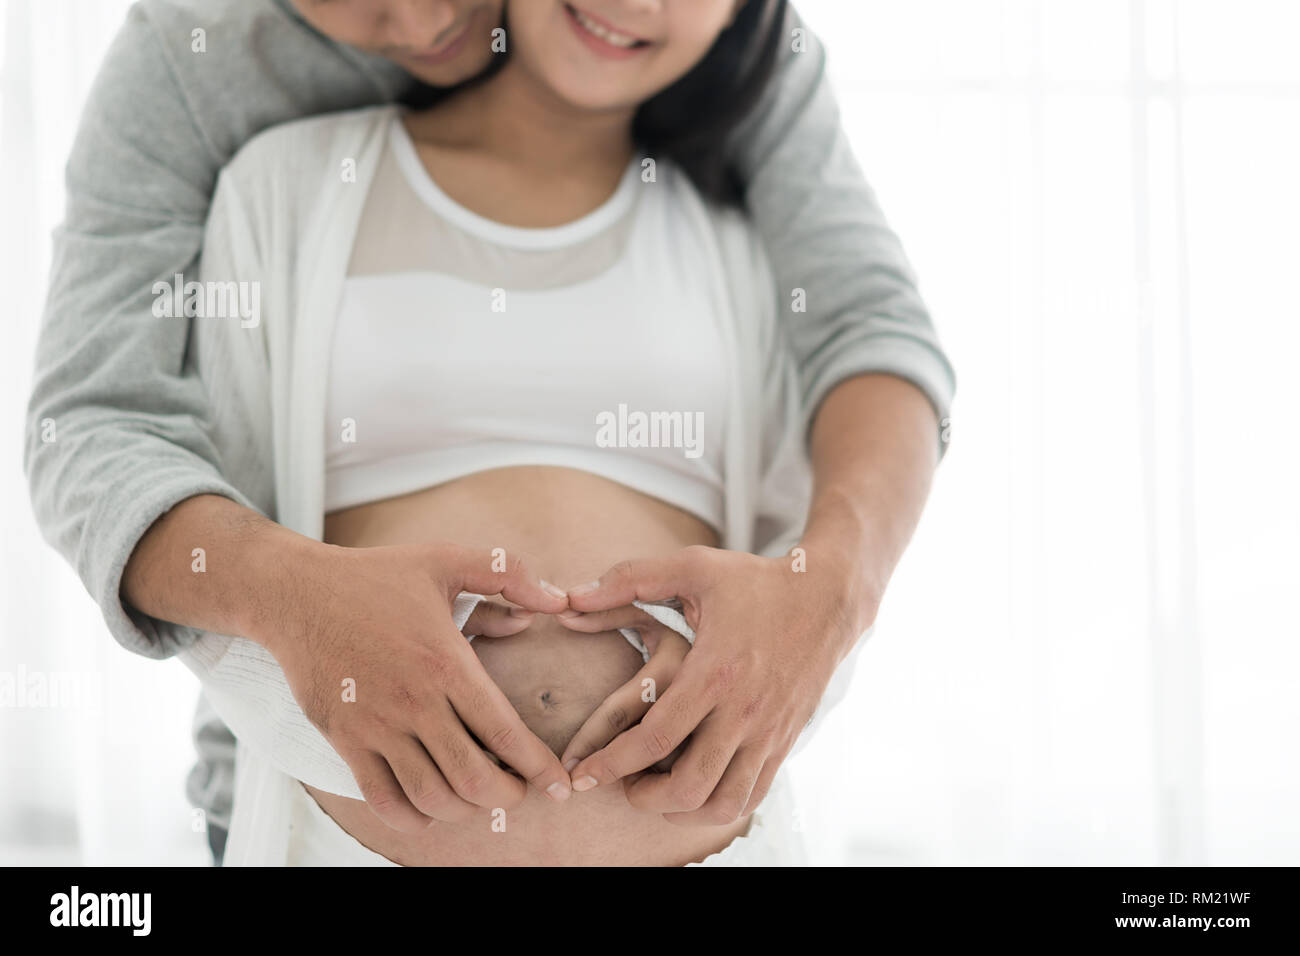 Asiatische schöne schwangere Frau und ihr schöner Mann umarmen den Bauch. Liebe Paar Hände machen ein Herz auf den schwangeren Bauch. Stockfoto